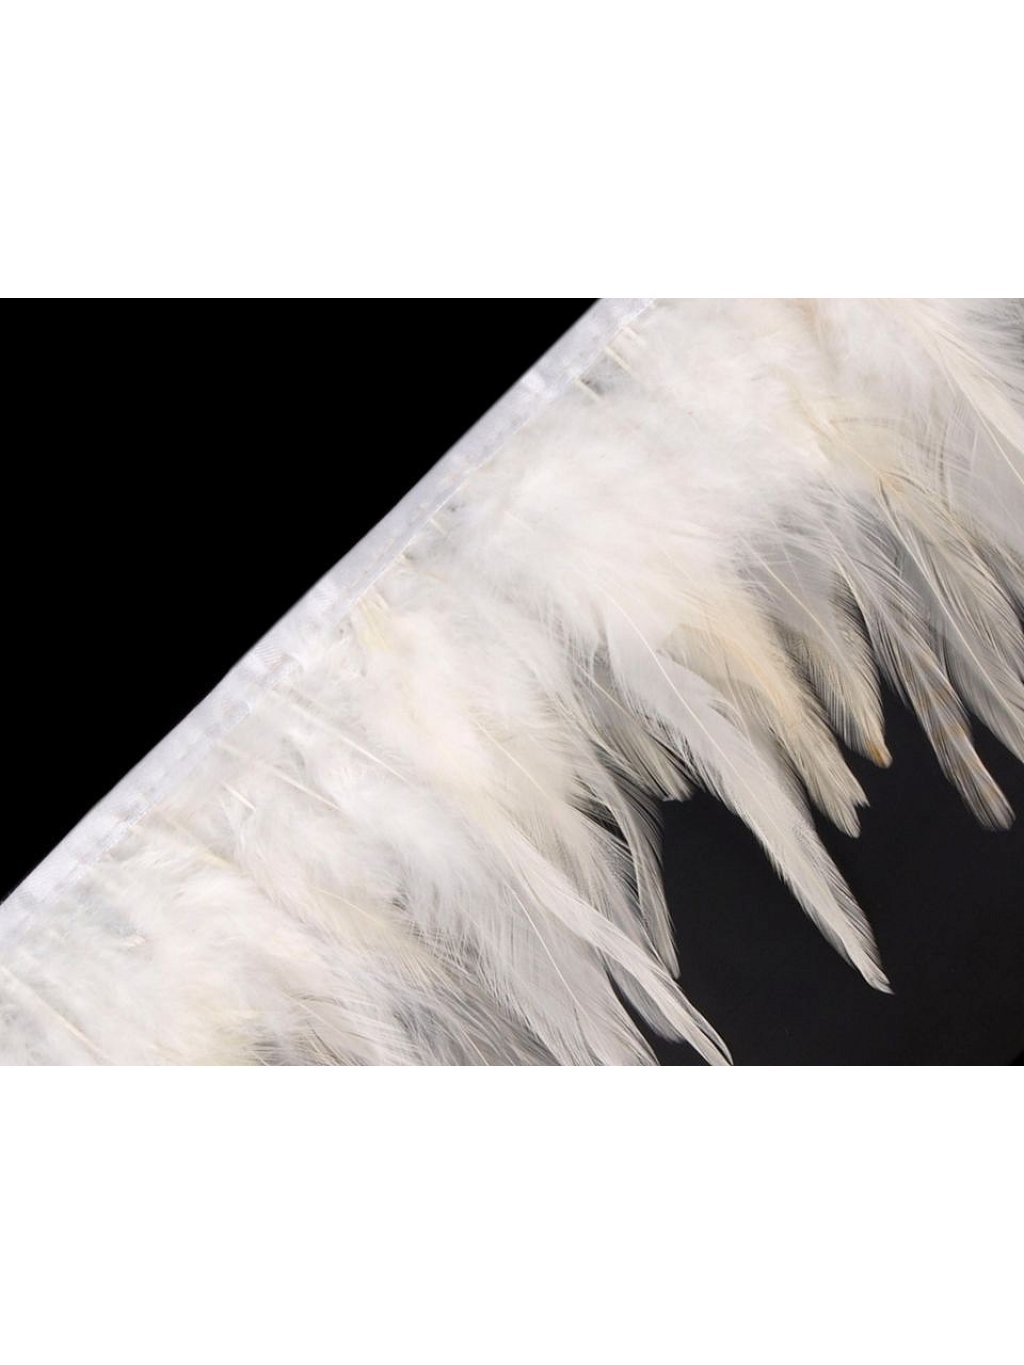 Prýmek - kohoutí peří bílé šíře 12 cm